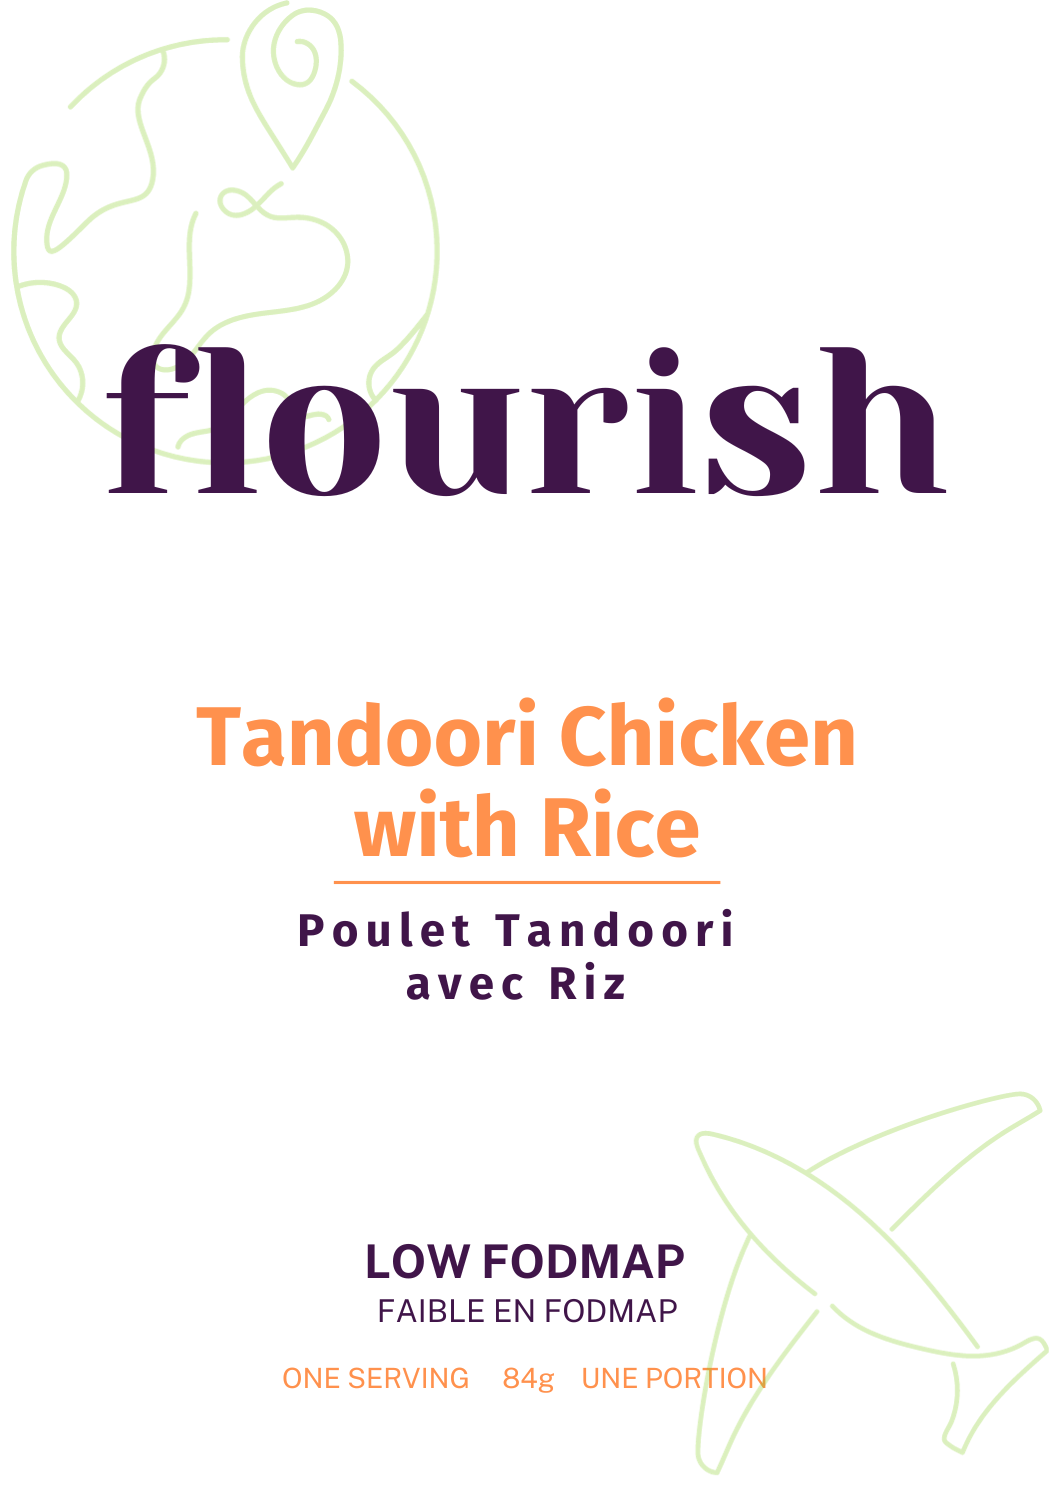 Tandoori Chicken and Rice